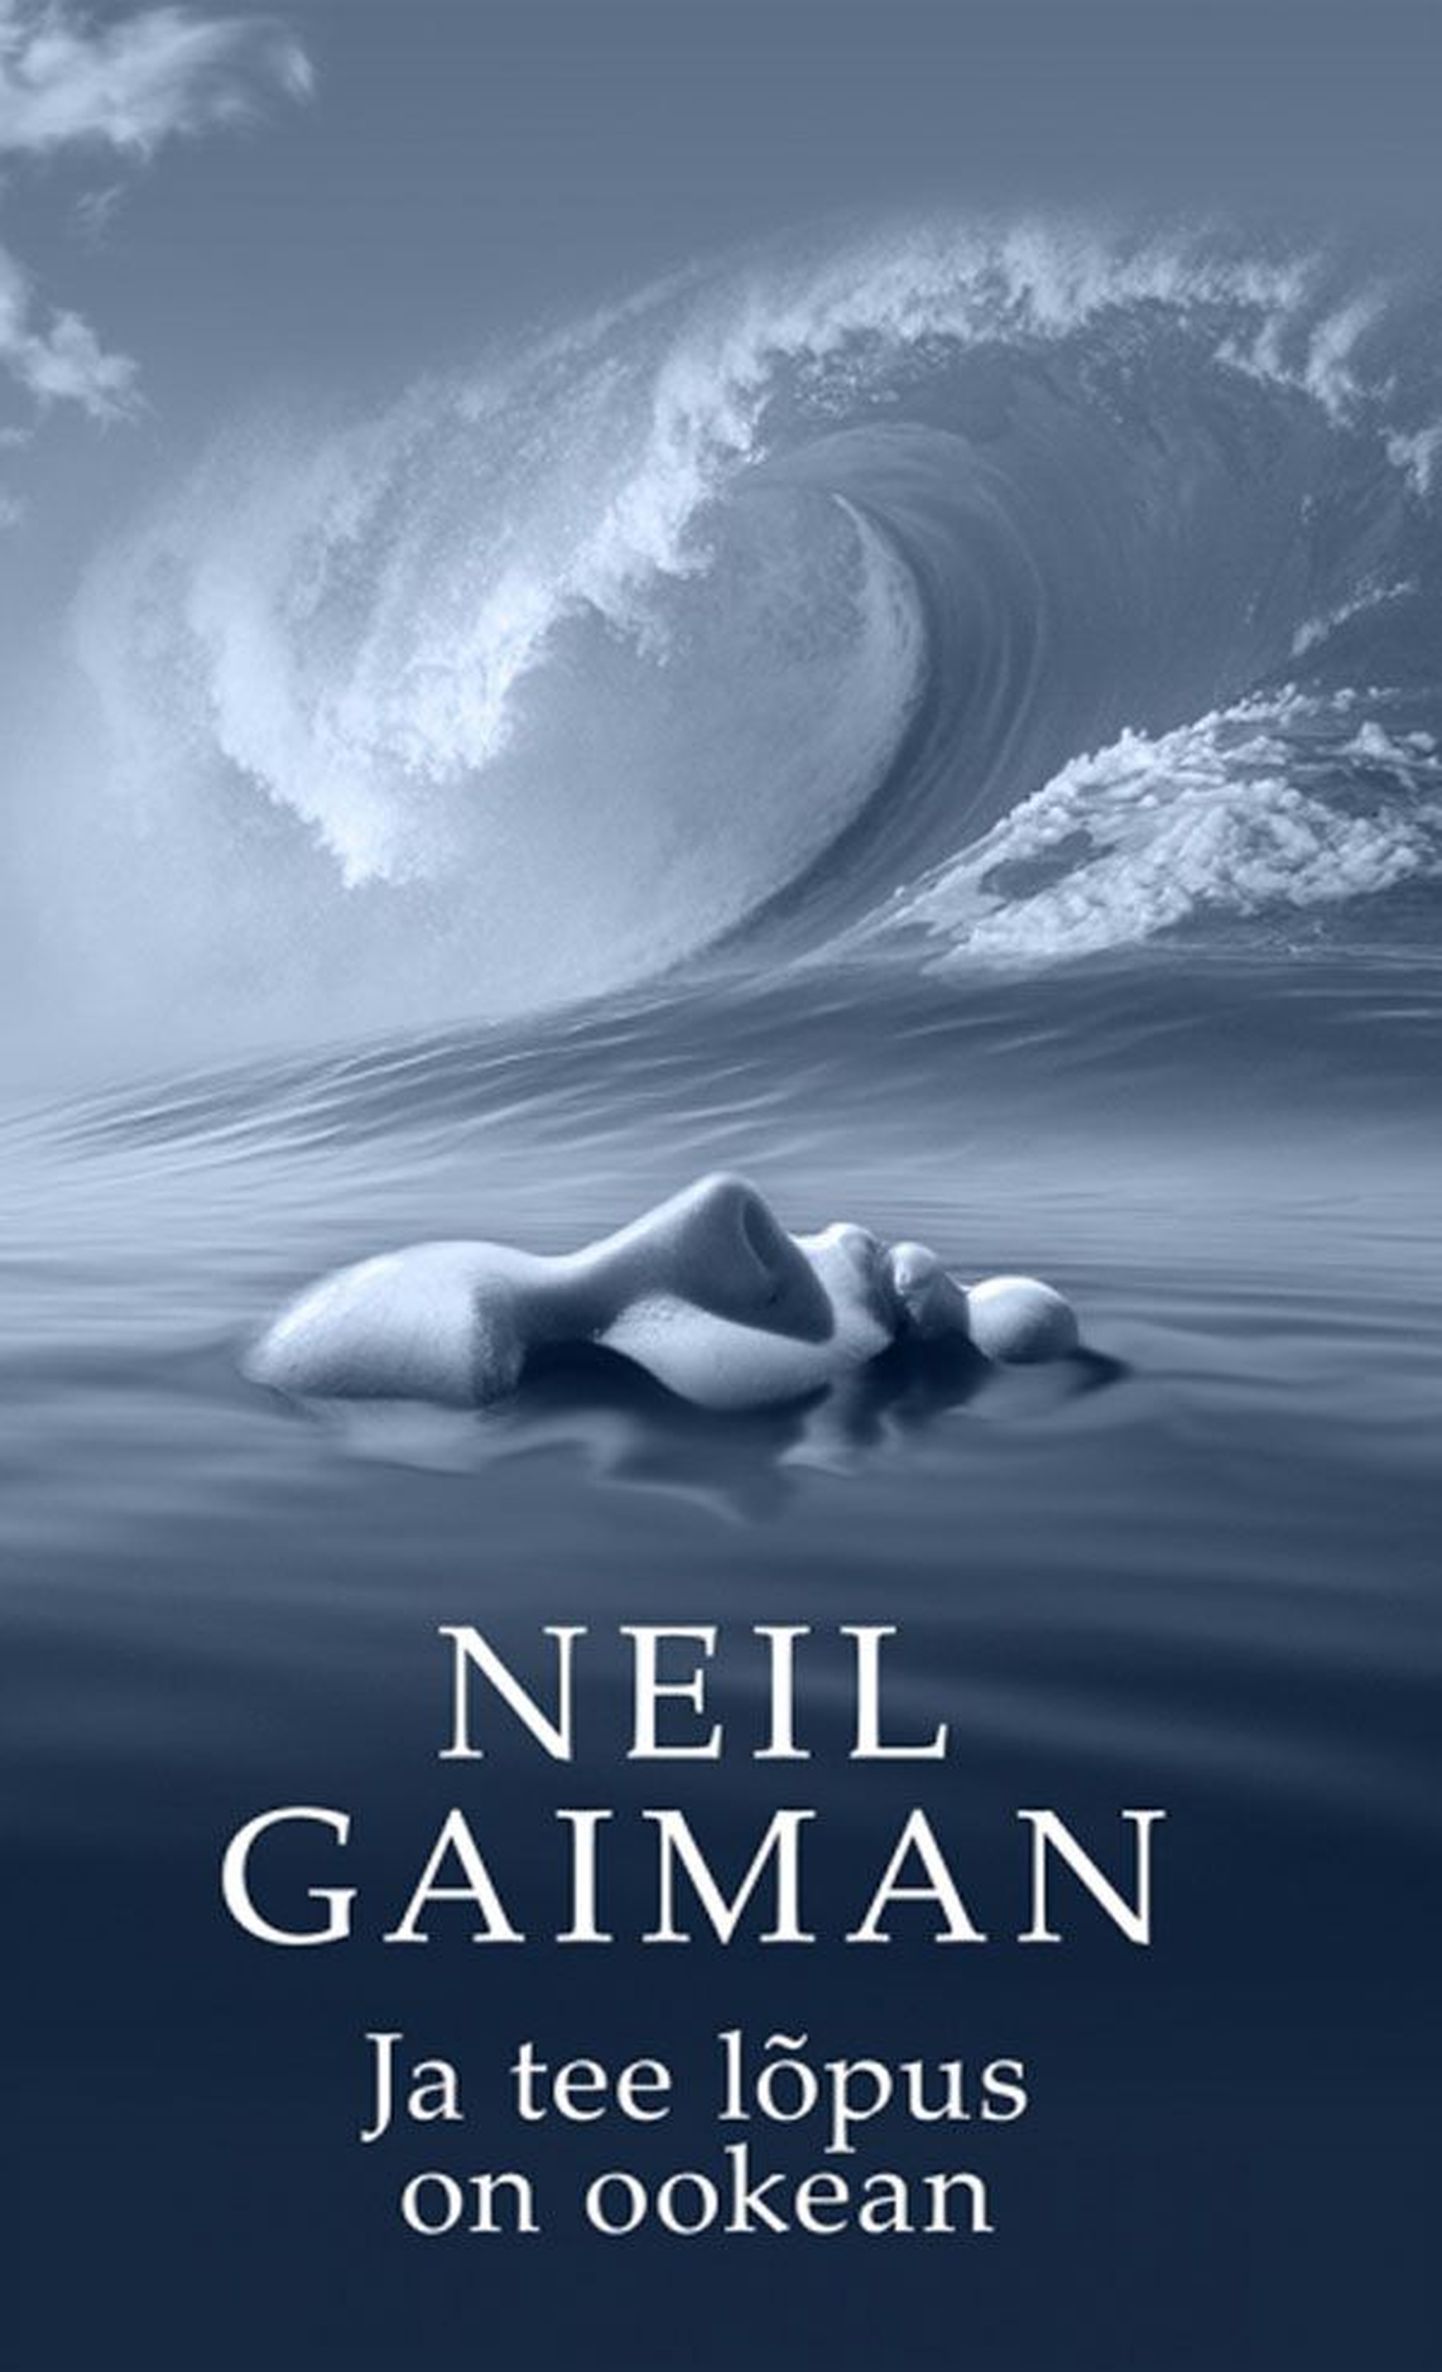 Raamat
Neil Gaiman
«Ja tee lõpus on ookean»
Kirjastus Varrak, tõlkinud Lauri Vahtre